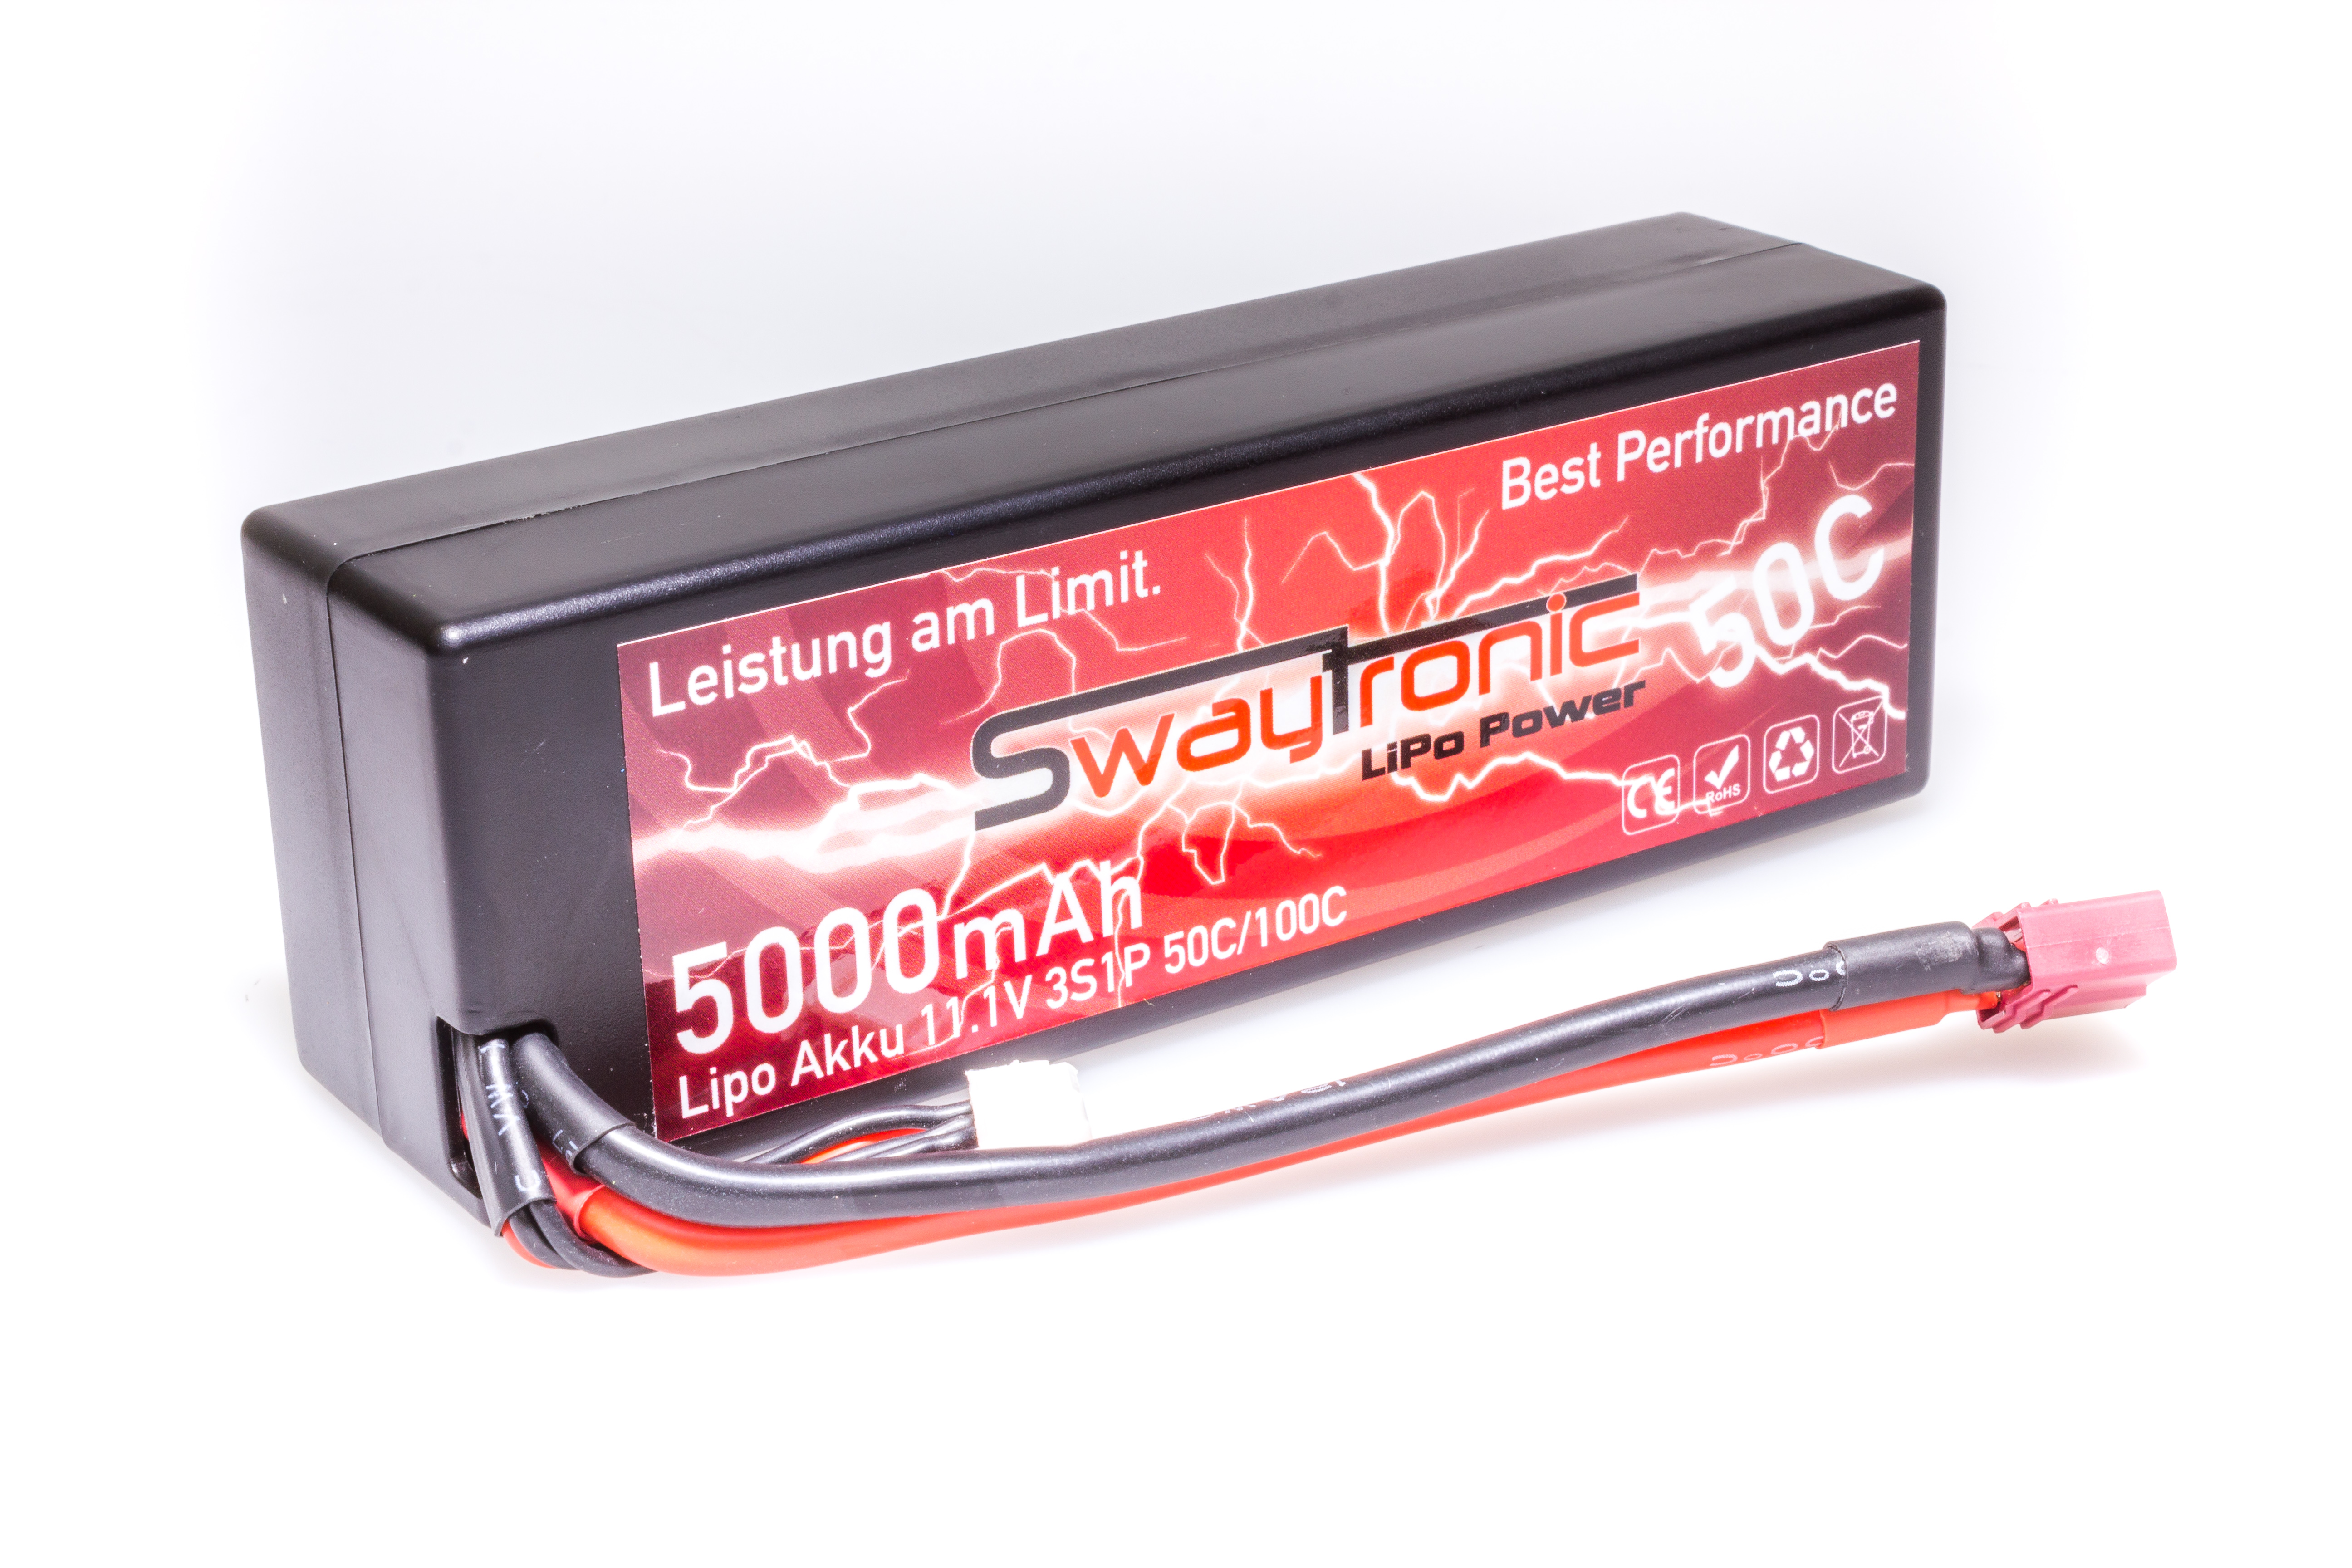 SWAYTRONIC HC LiPo 3S 11.1V 5000mAh 50C/100C